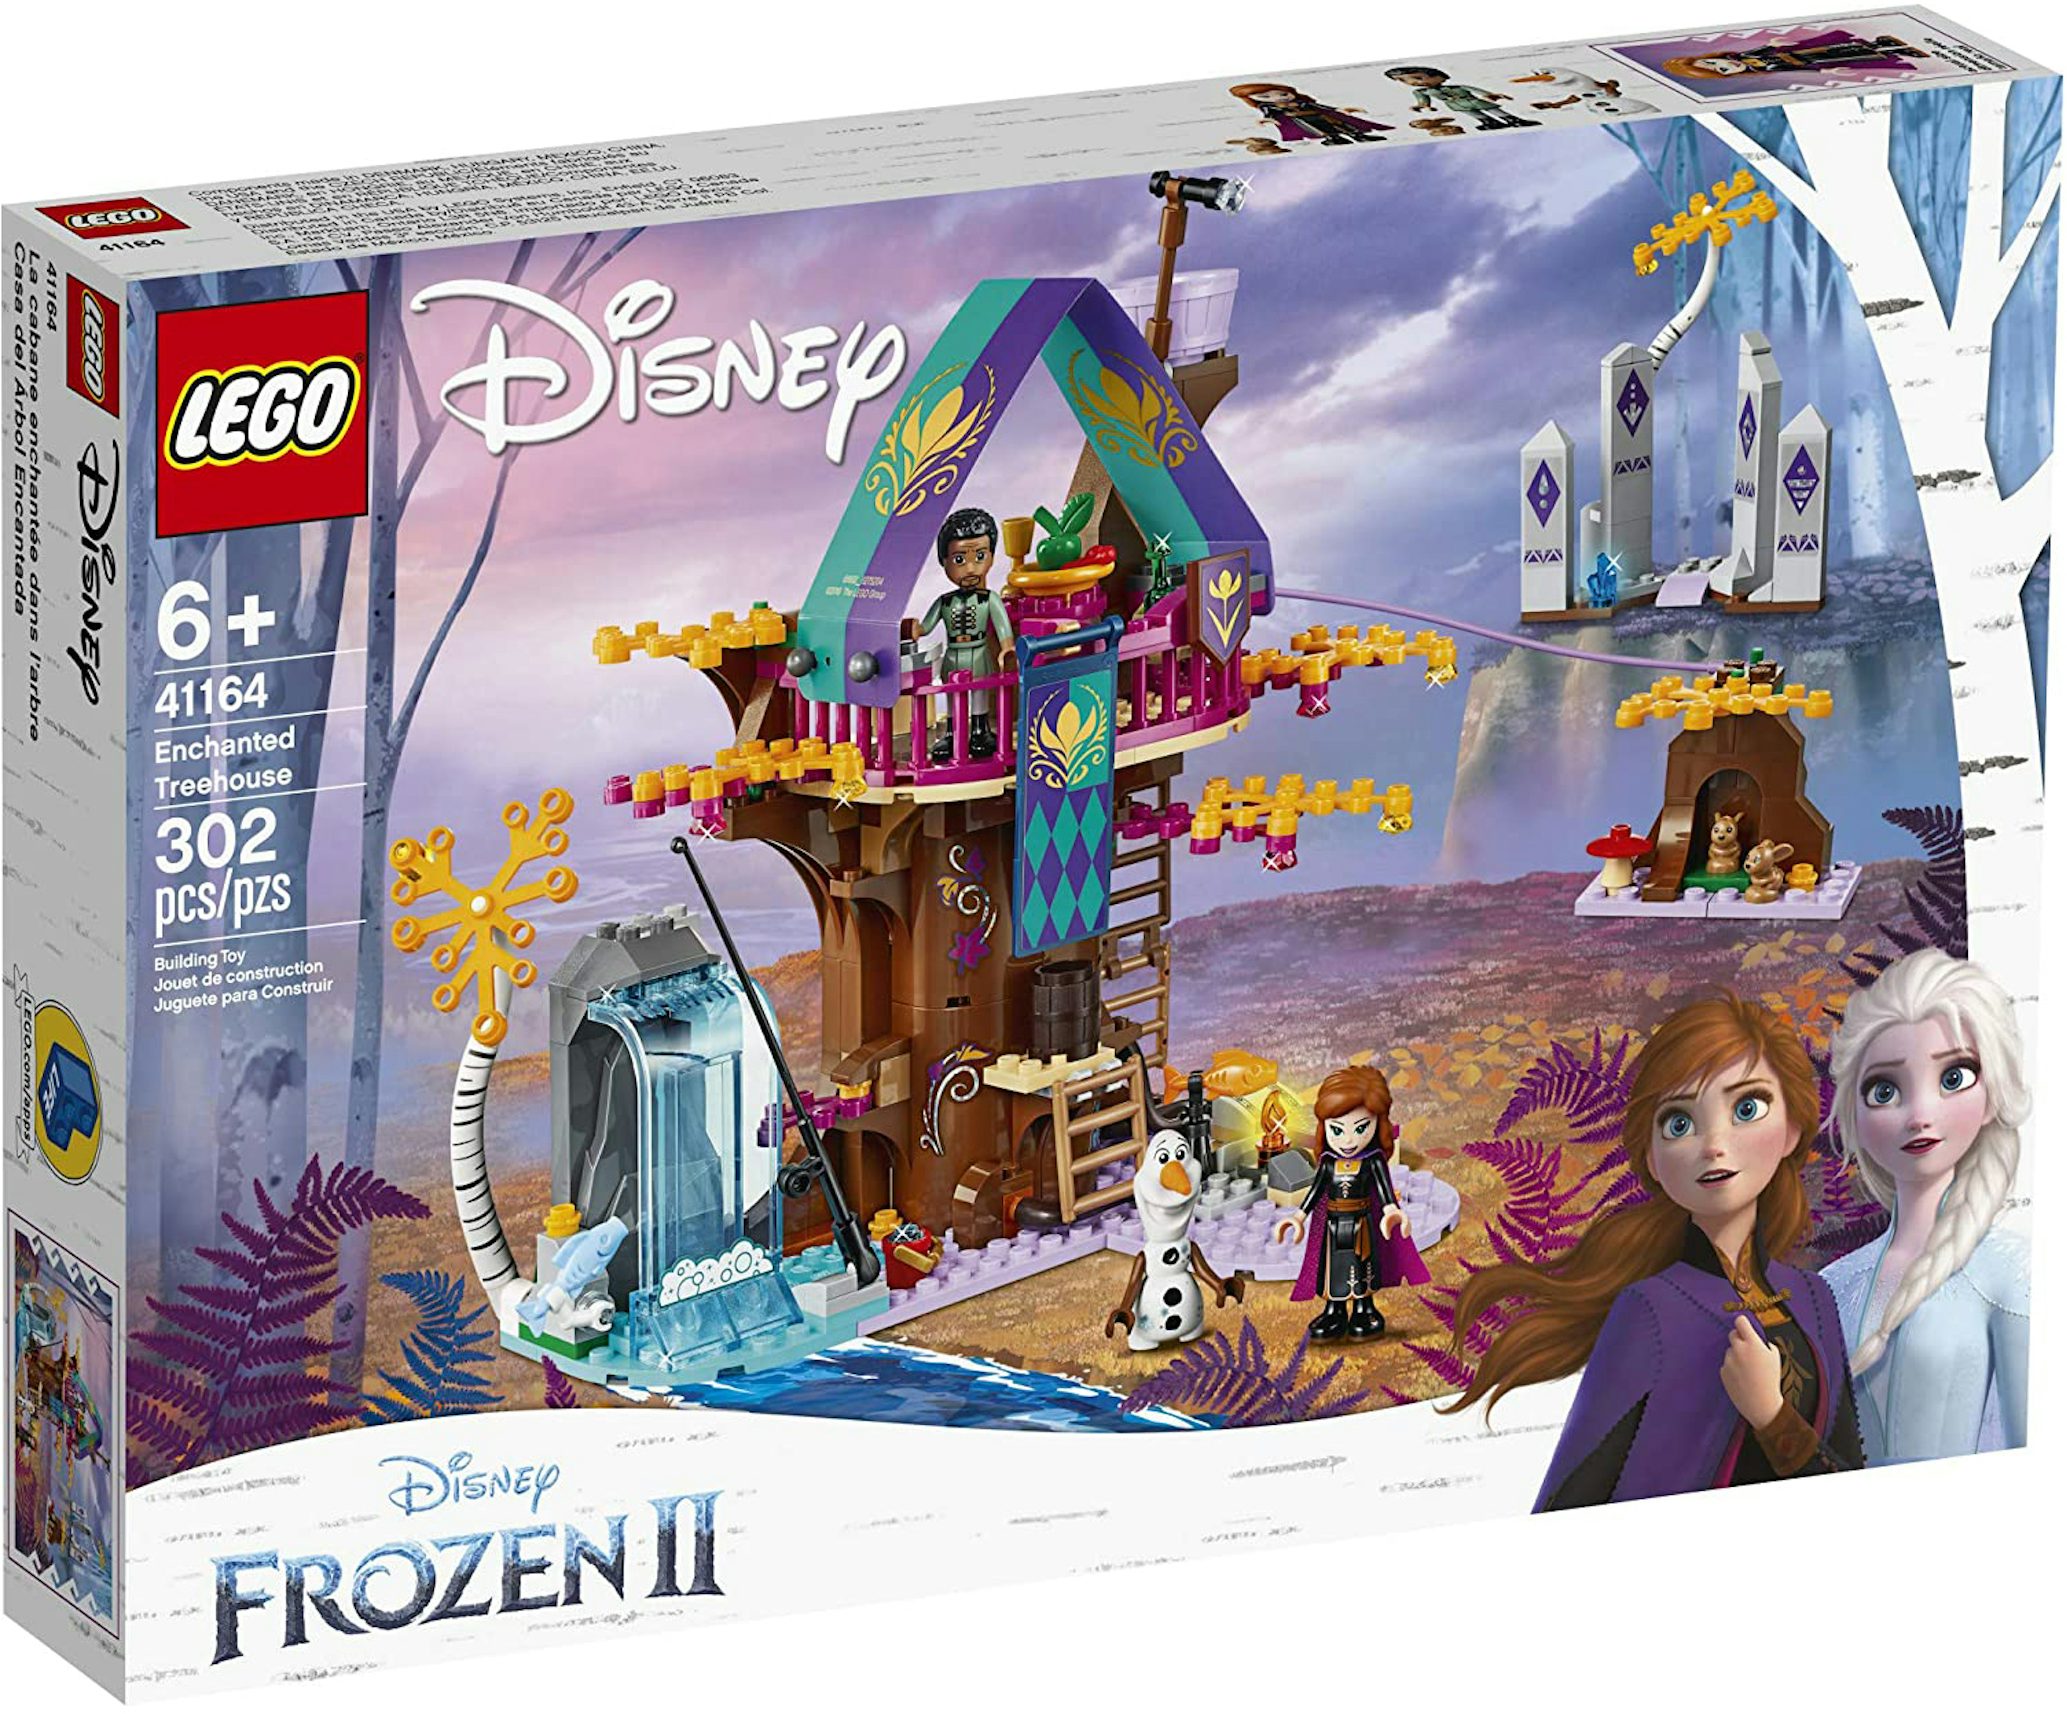 LEGO Disney Frozen Enchanted Treehouse Set 41164 - US